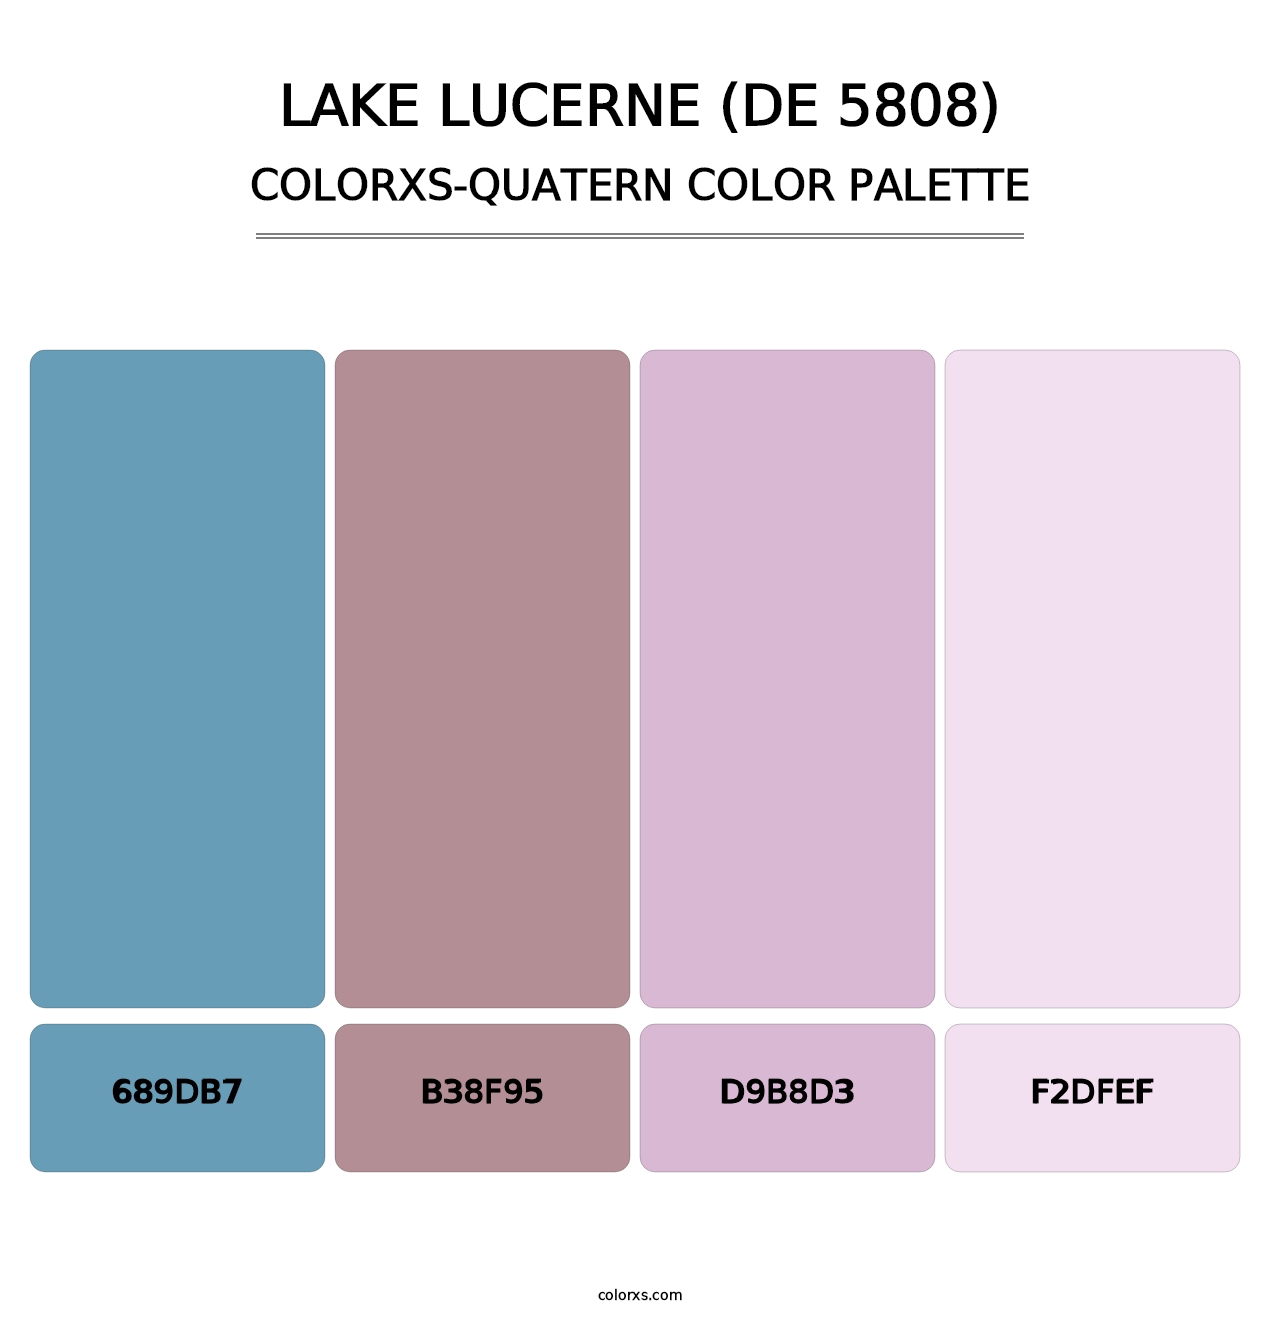 Lake Lucerne (DE 5808) - Colorxs Quatern Palette